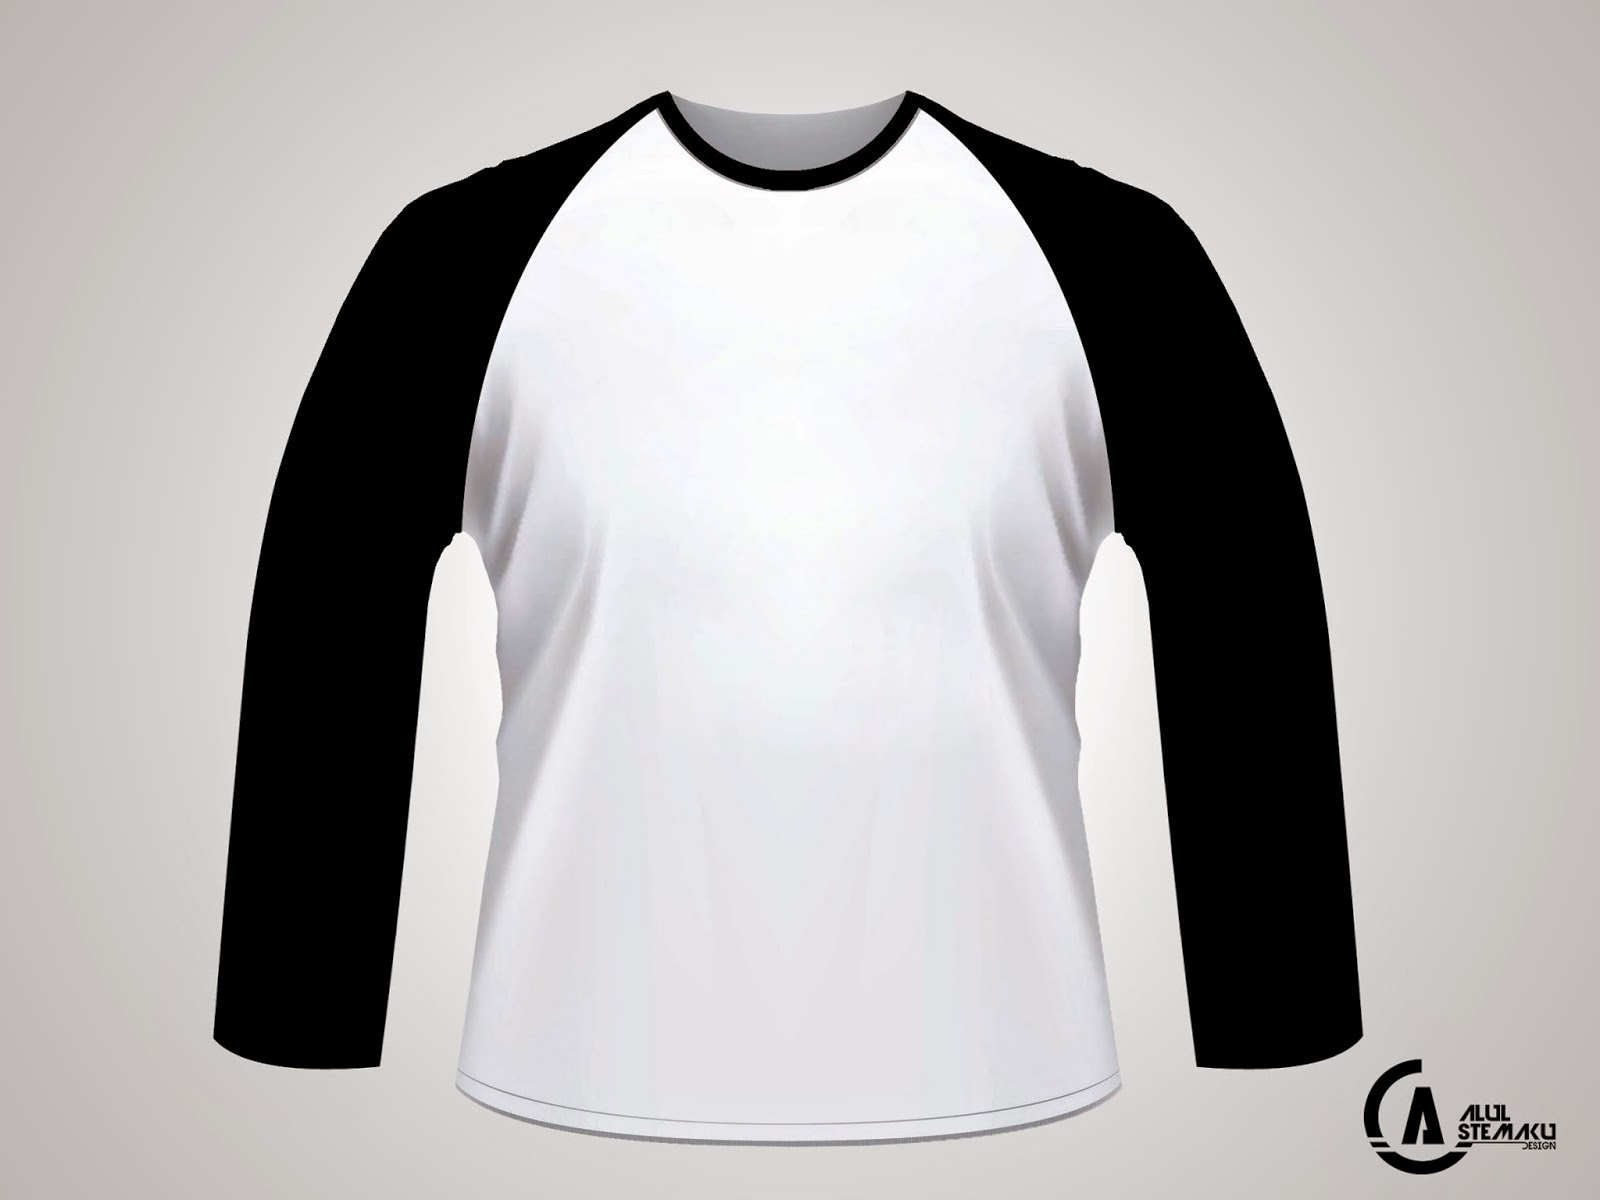 contoh desain baju kaos putih lengan panjang bts logo
